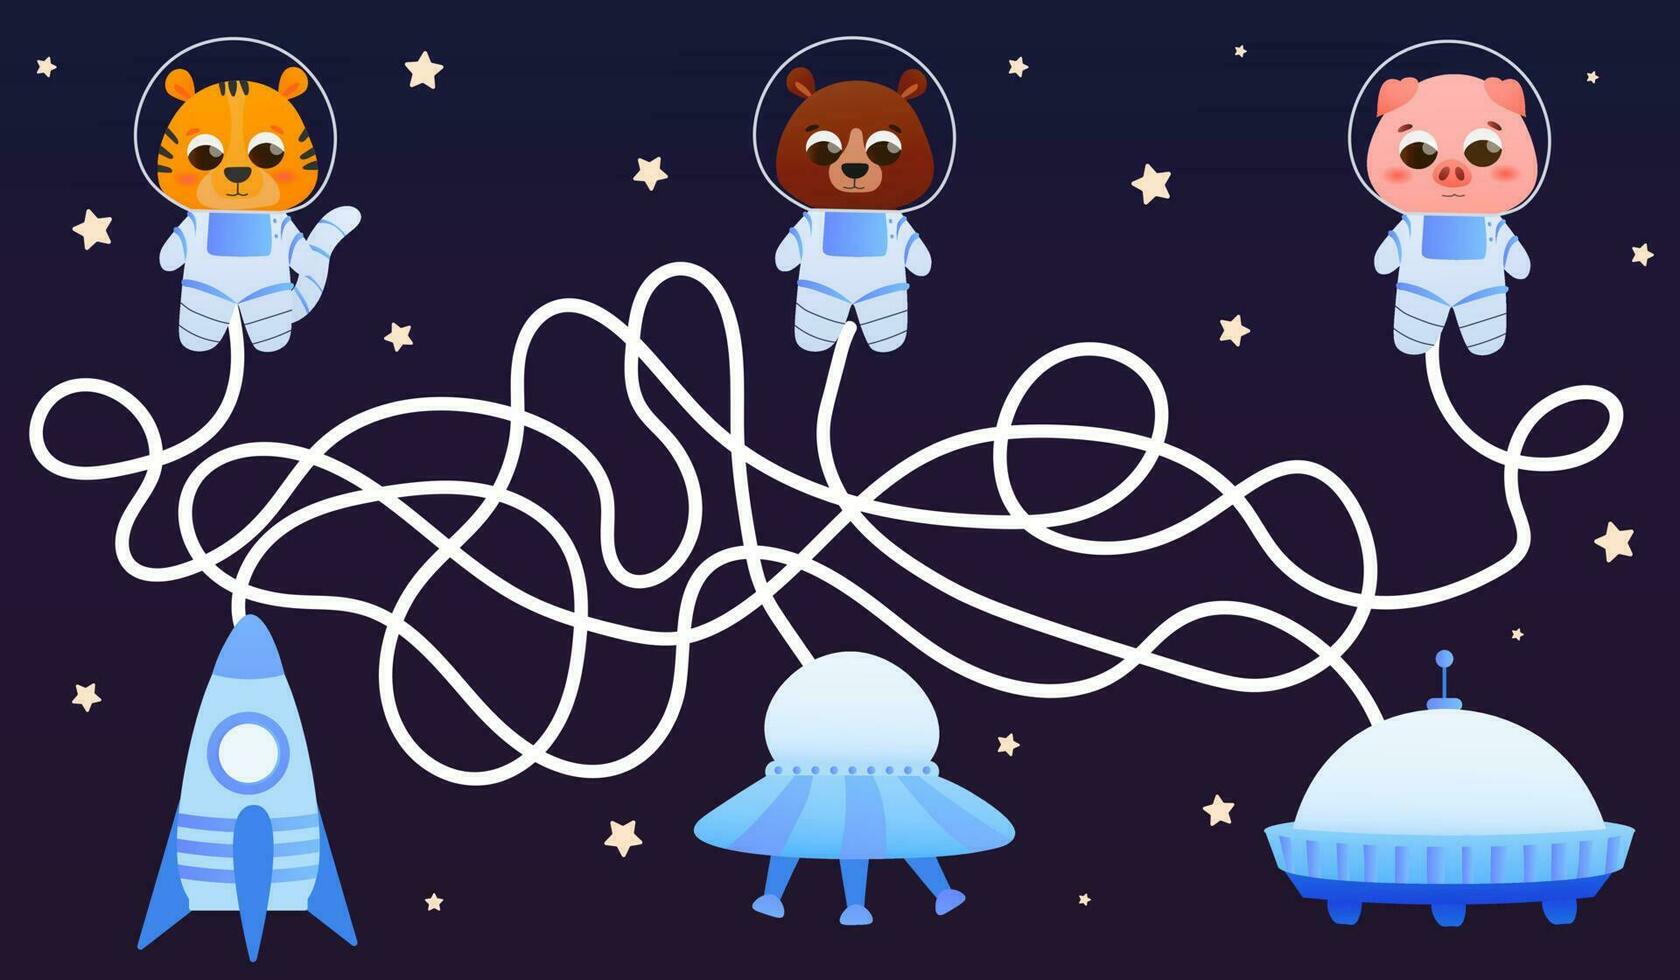 infantil laberinto juego, ayuda encontrar camino animales a su naves espaciales, galaxia explorador tema en dibujos animados estilo vector